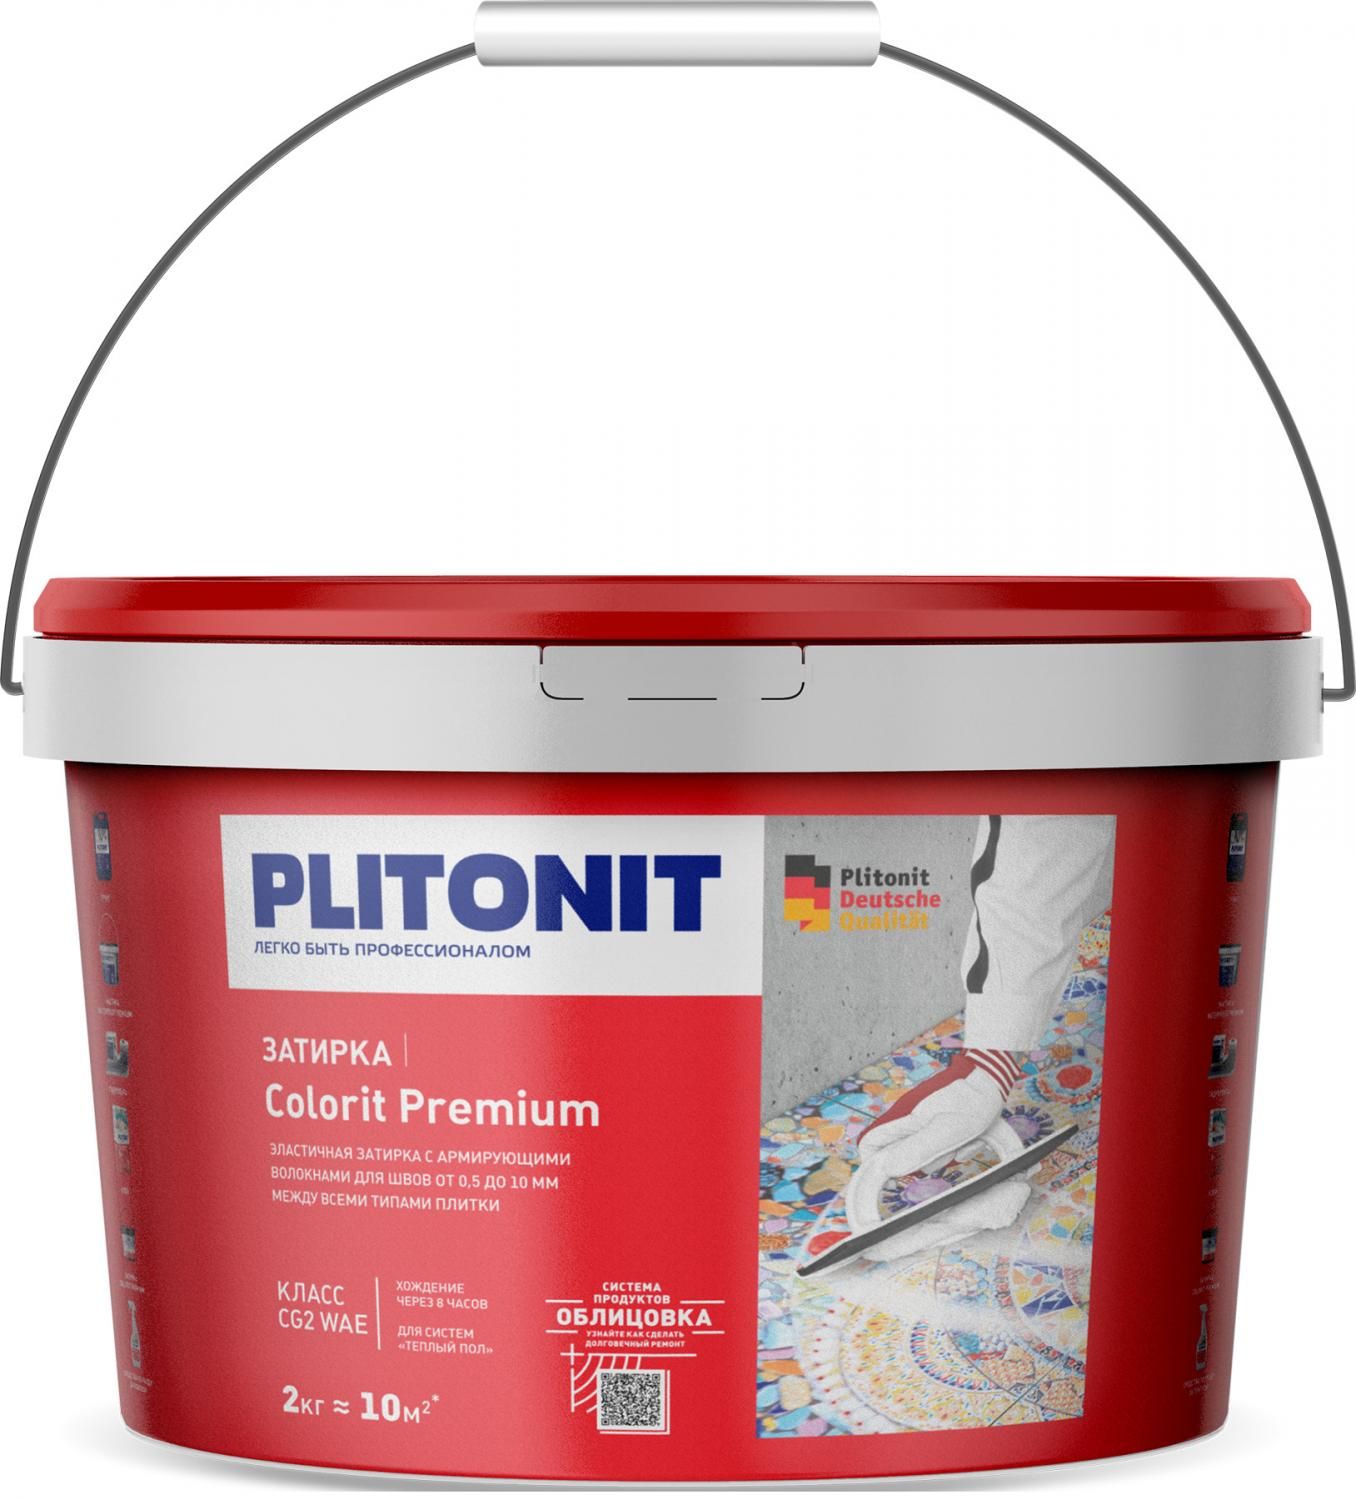 Купить Затирка Plitonit Colorit Premium бежевая 2 кг цементная